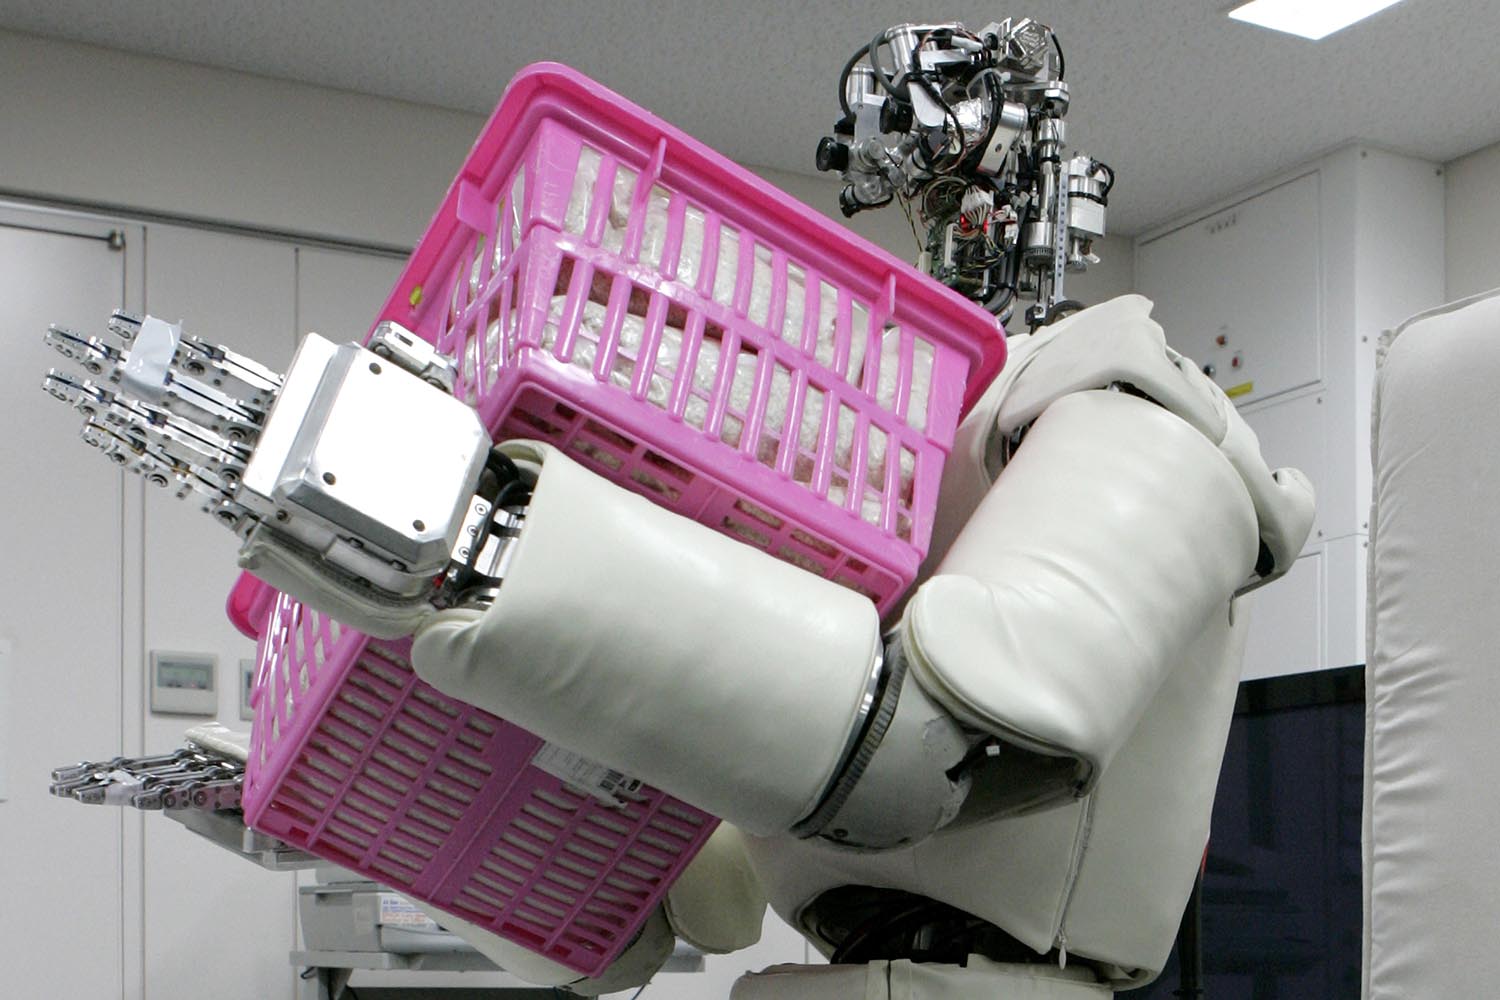 Especial mundo robot. Este robot humanoide es el primero del mundo que levanta paquetes y cajas